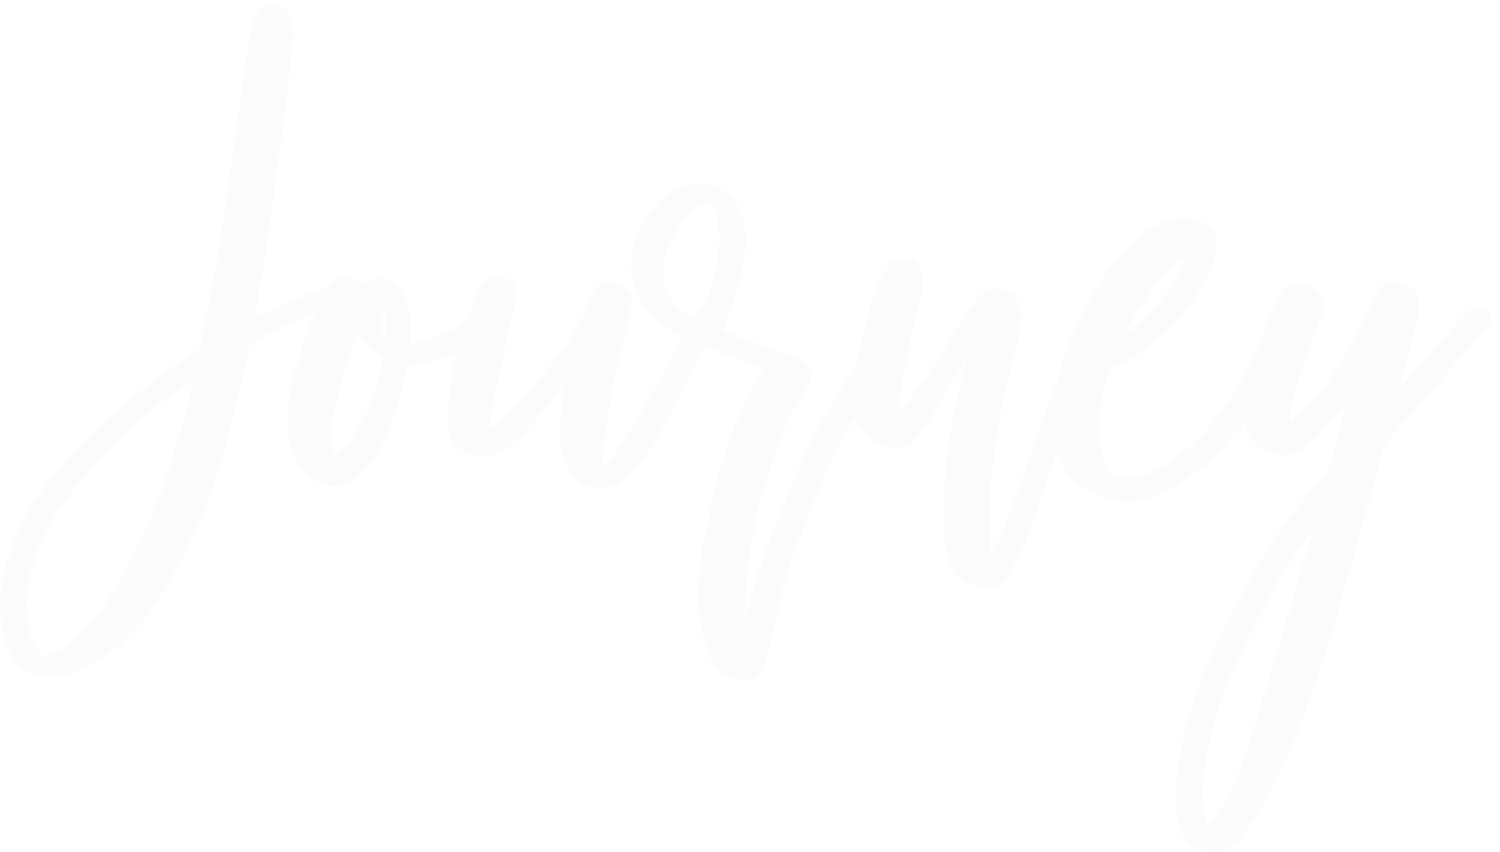 The Enneagram Journey